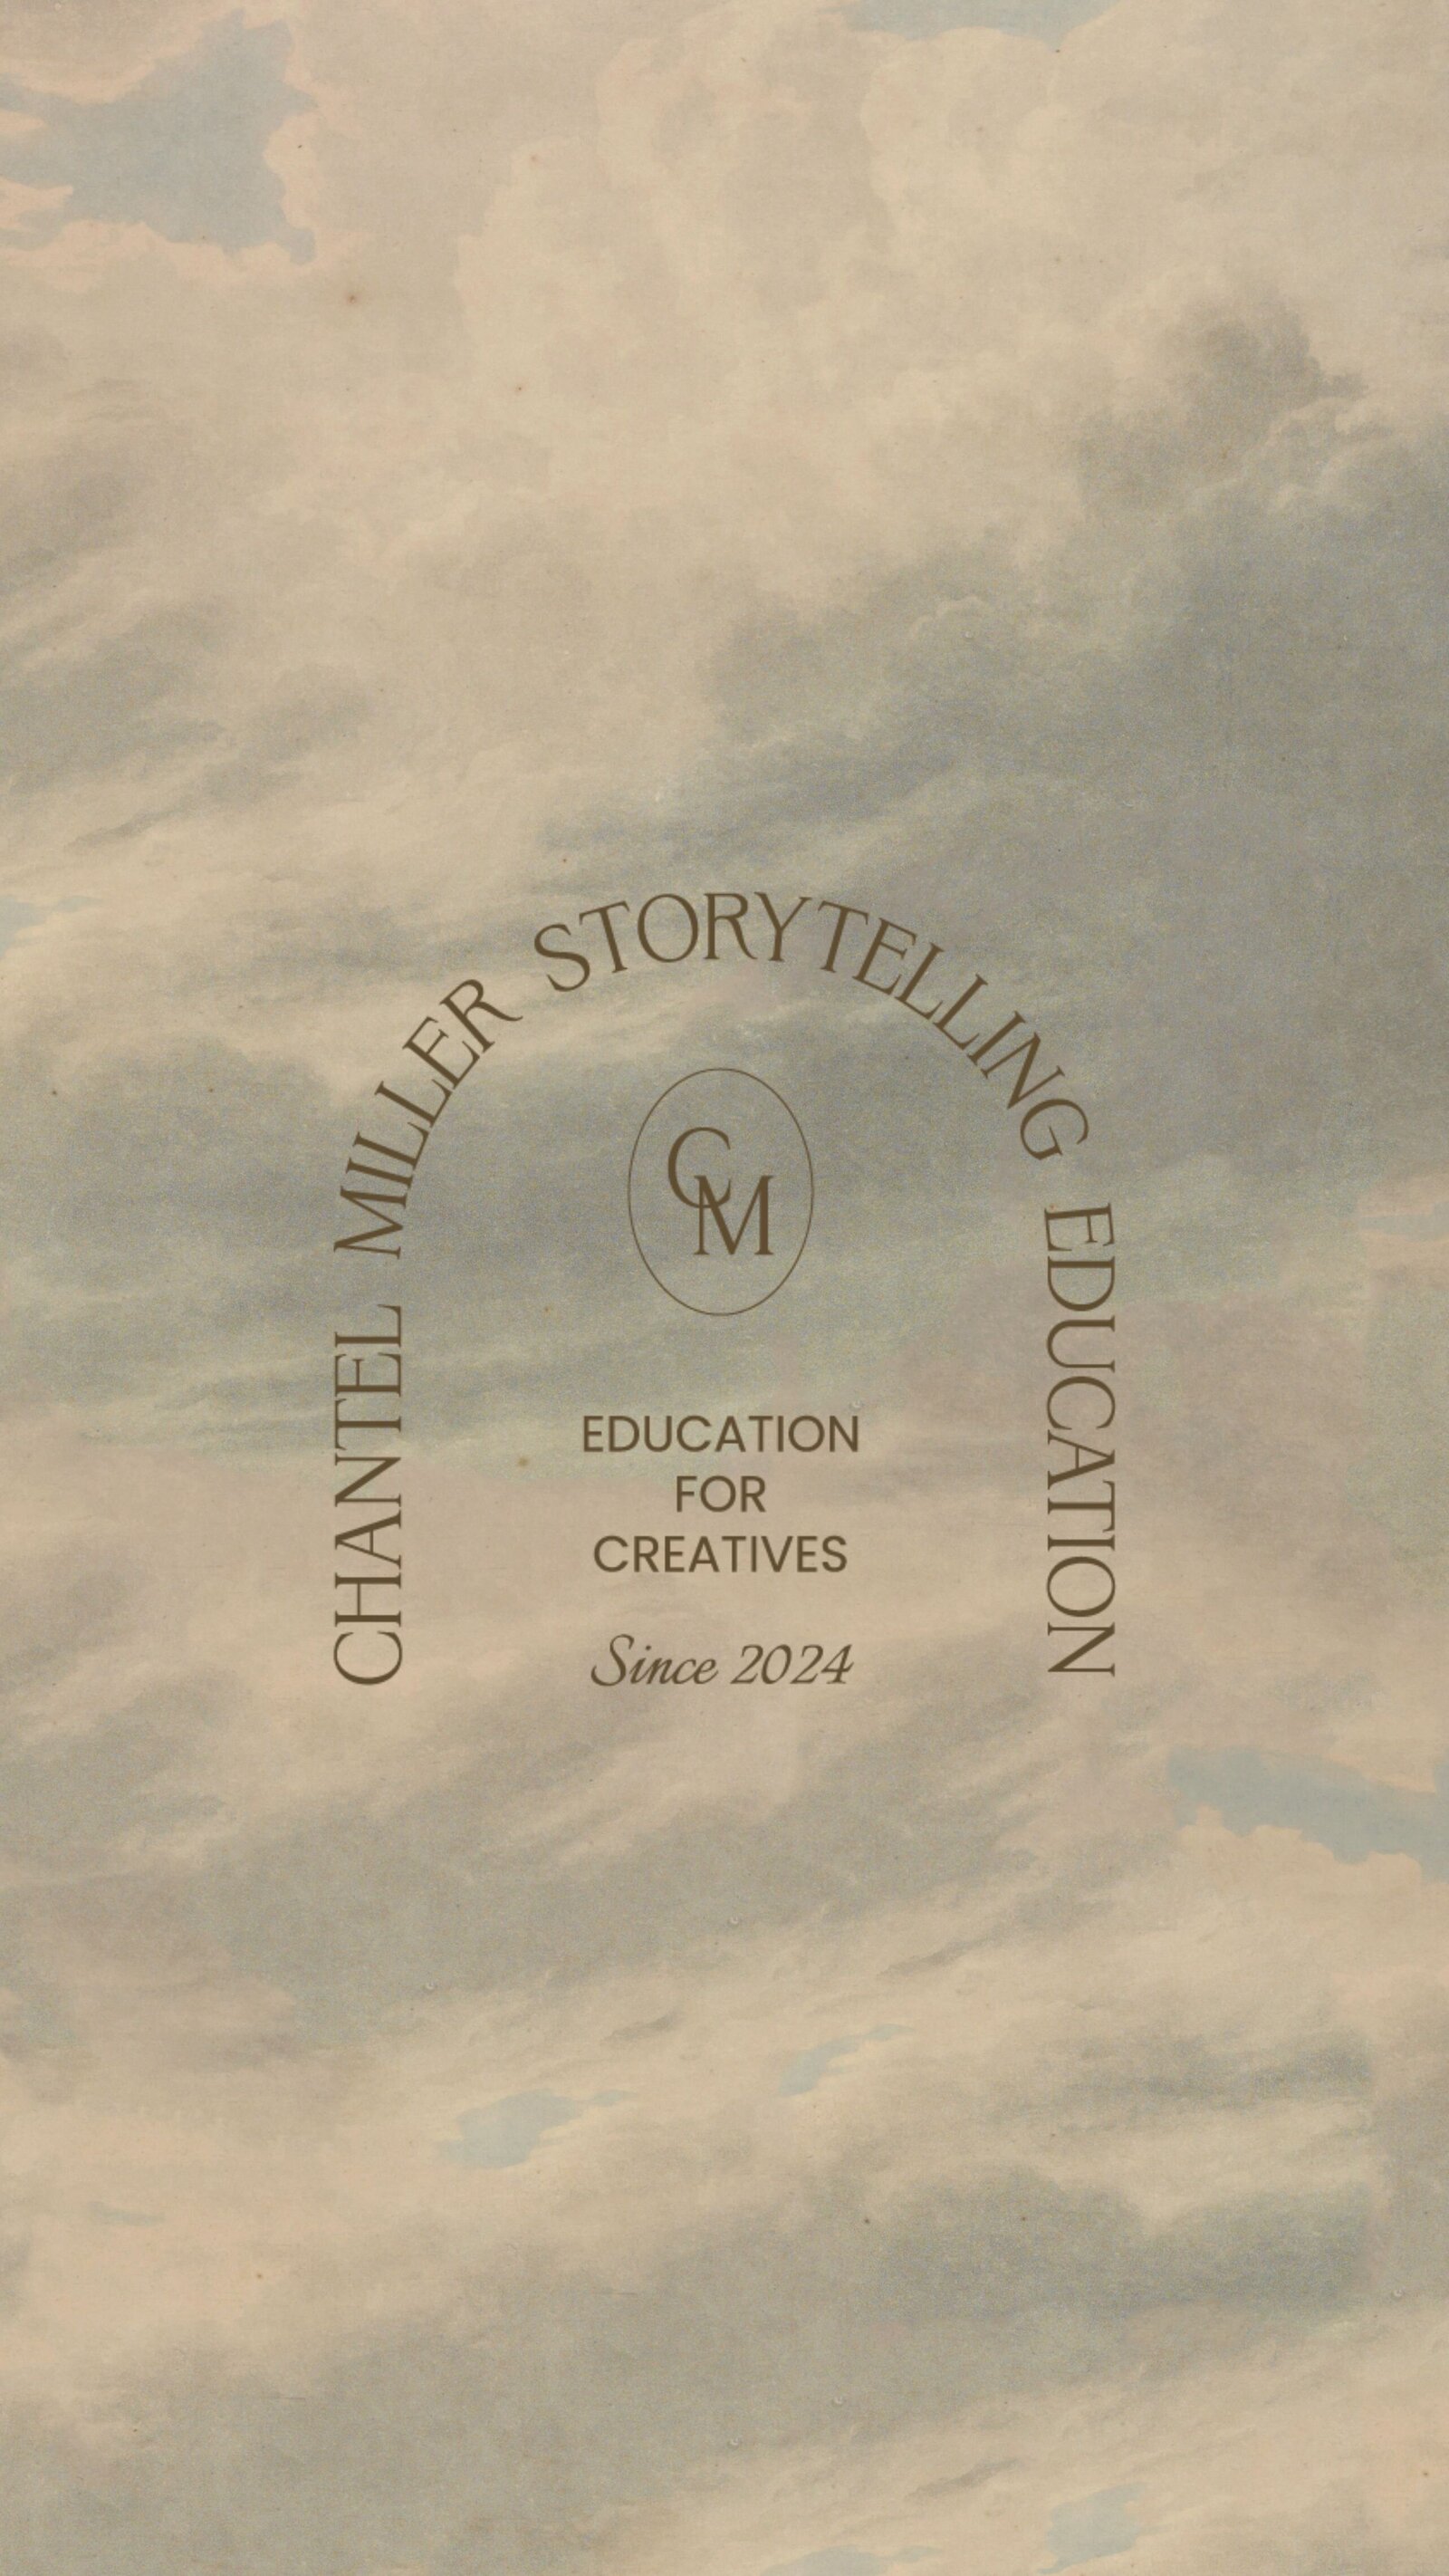 Chantel Miller Storytelling Education for creatives branding header